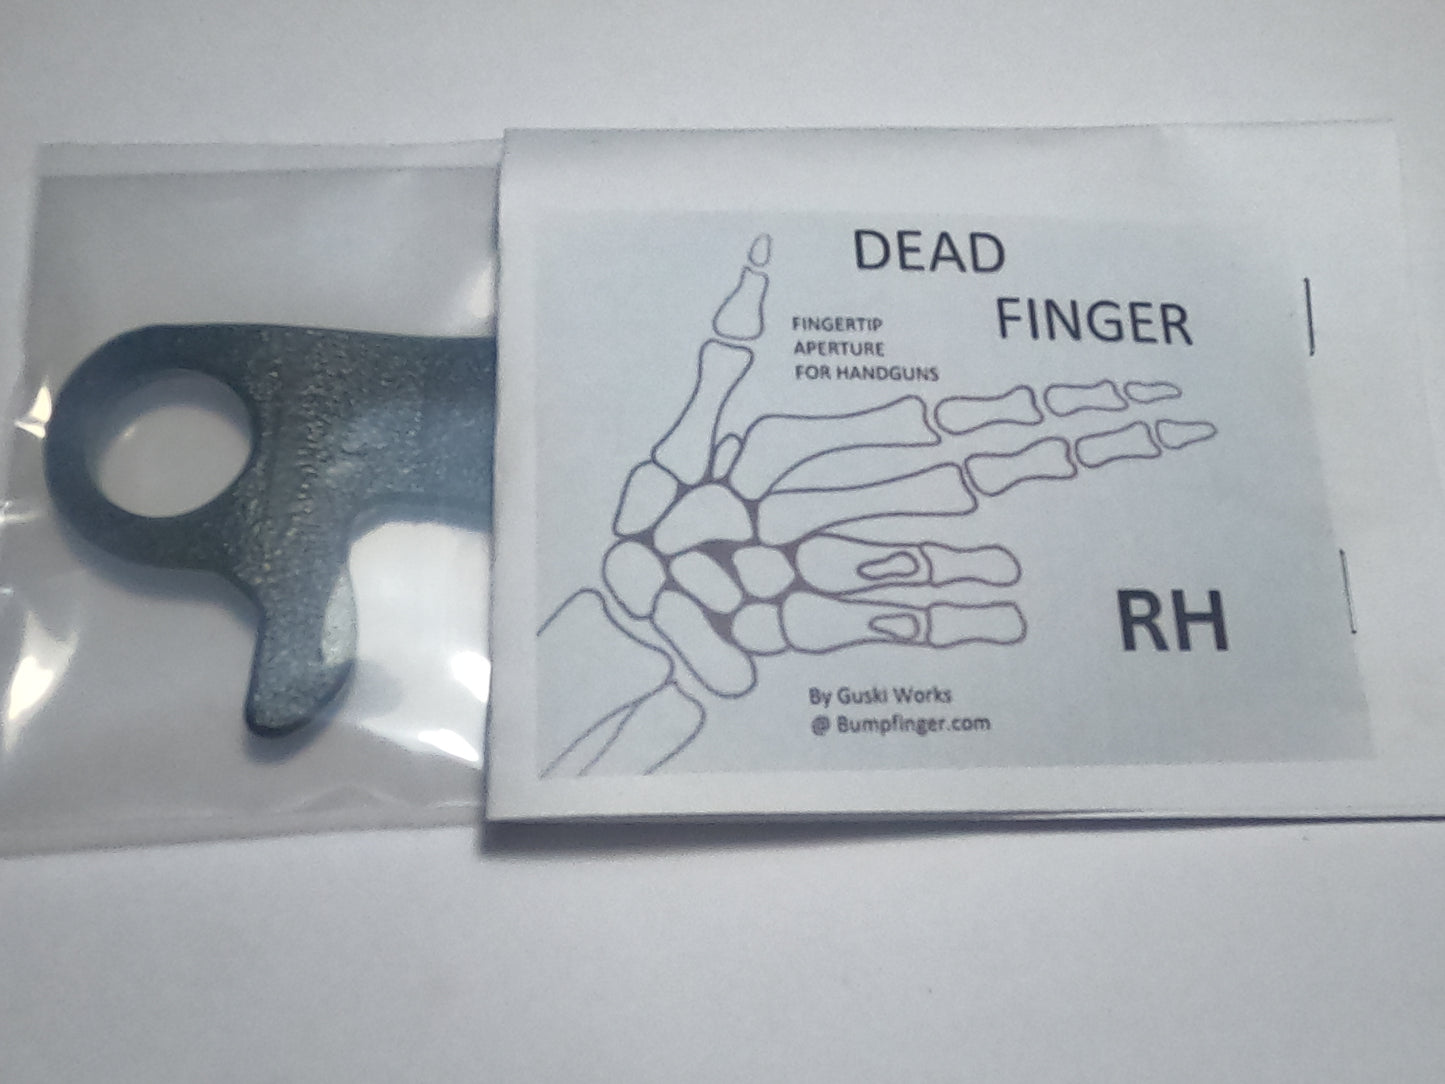 RH DEAD FINGER Fingertip Aperture for handguns right hand